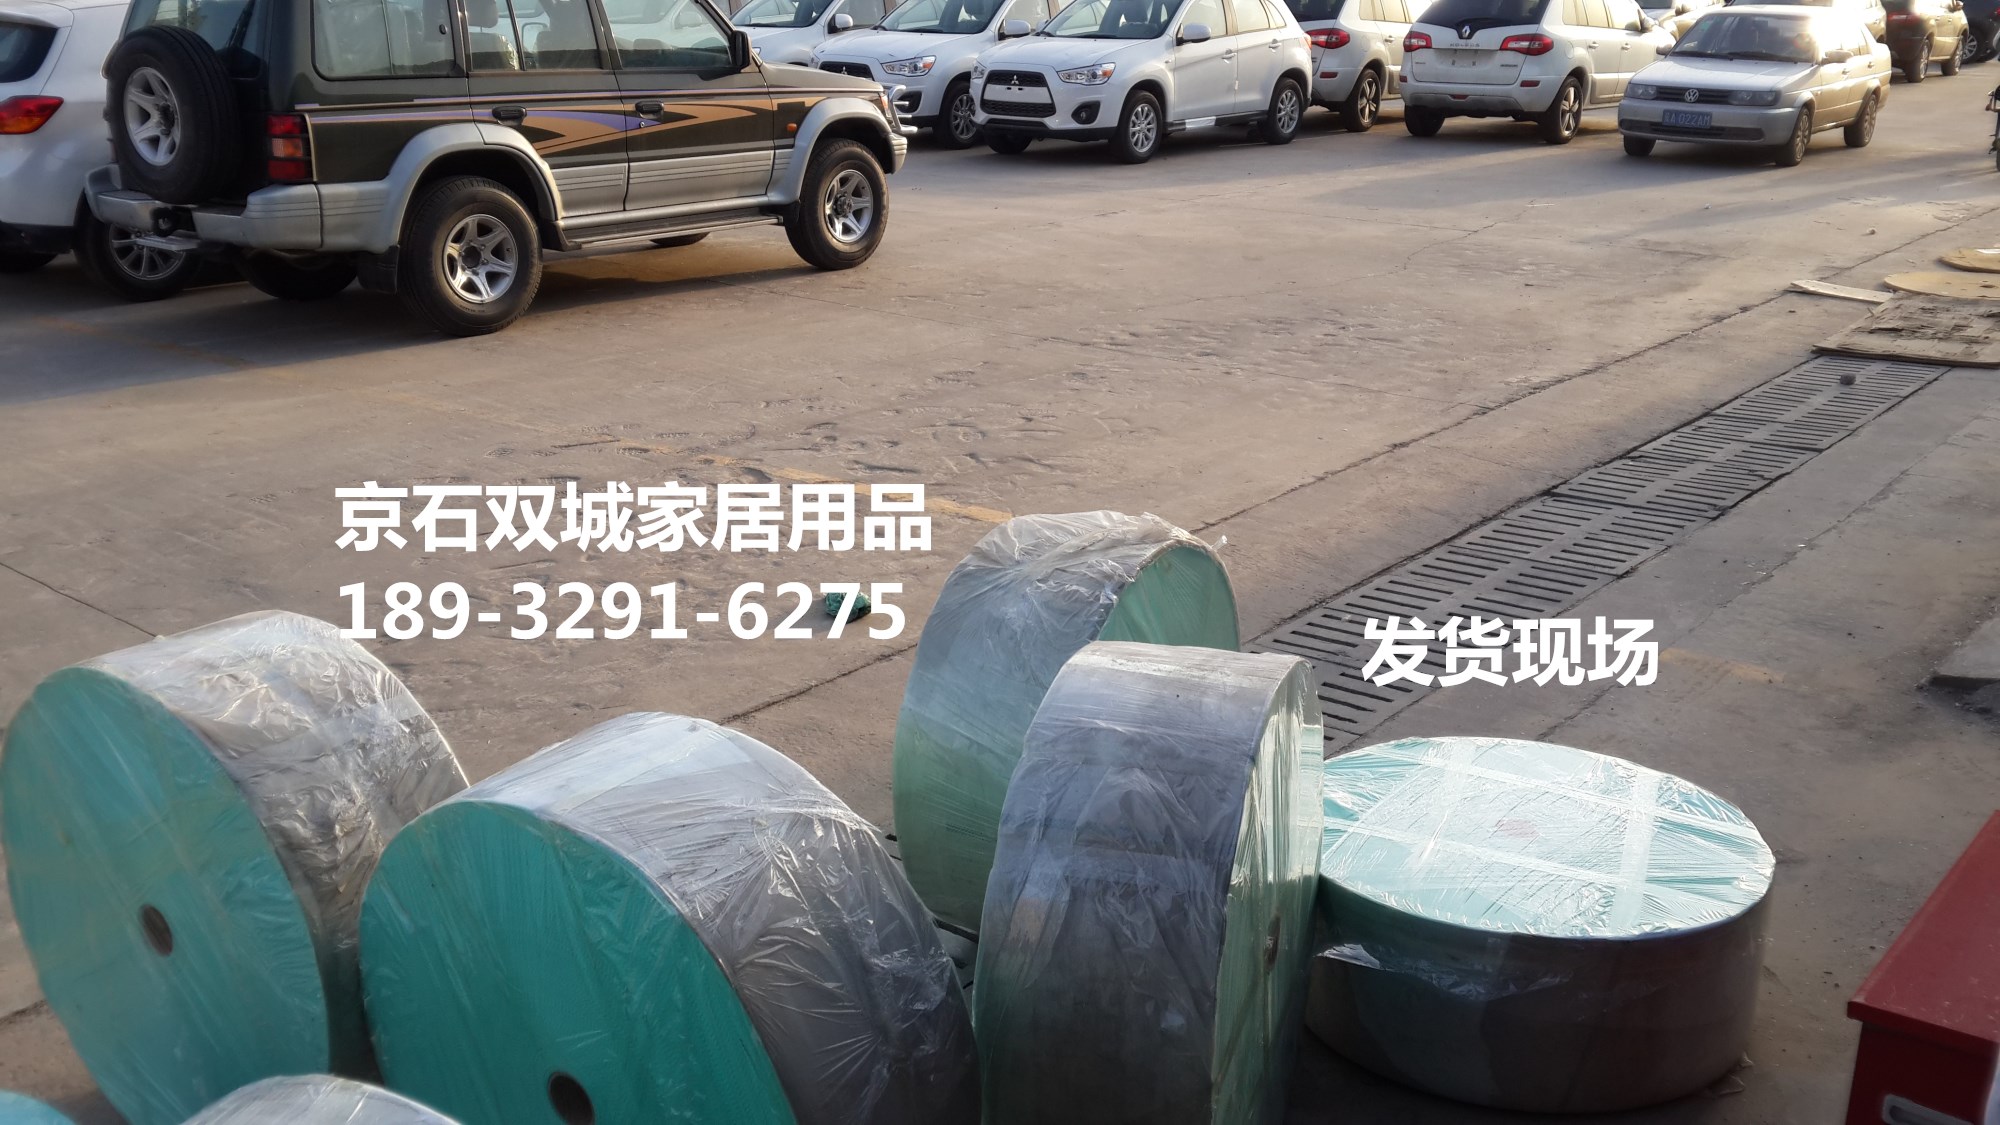 竹纤维不沾油抹布 按米卖抹布日赚千元 跑江湖产品